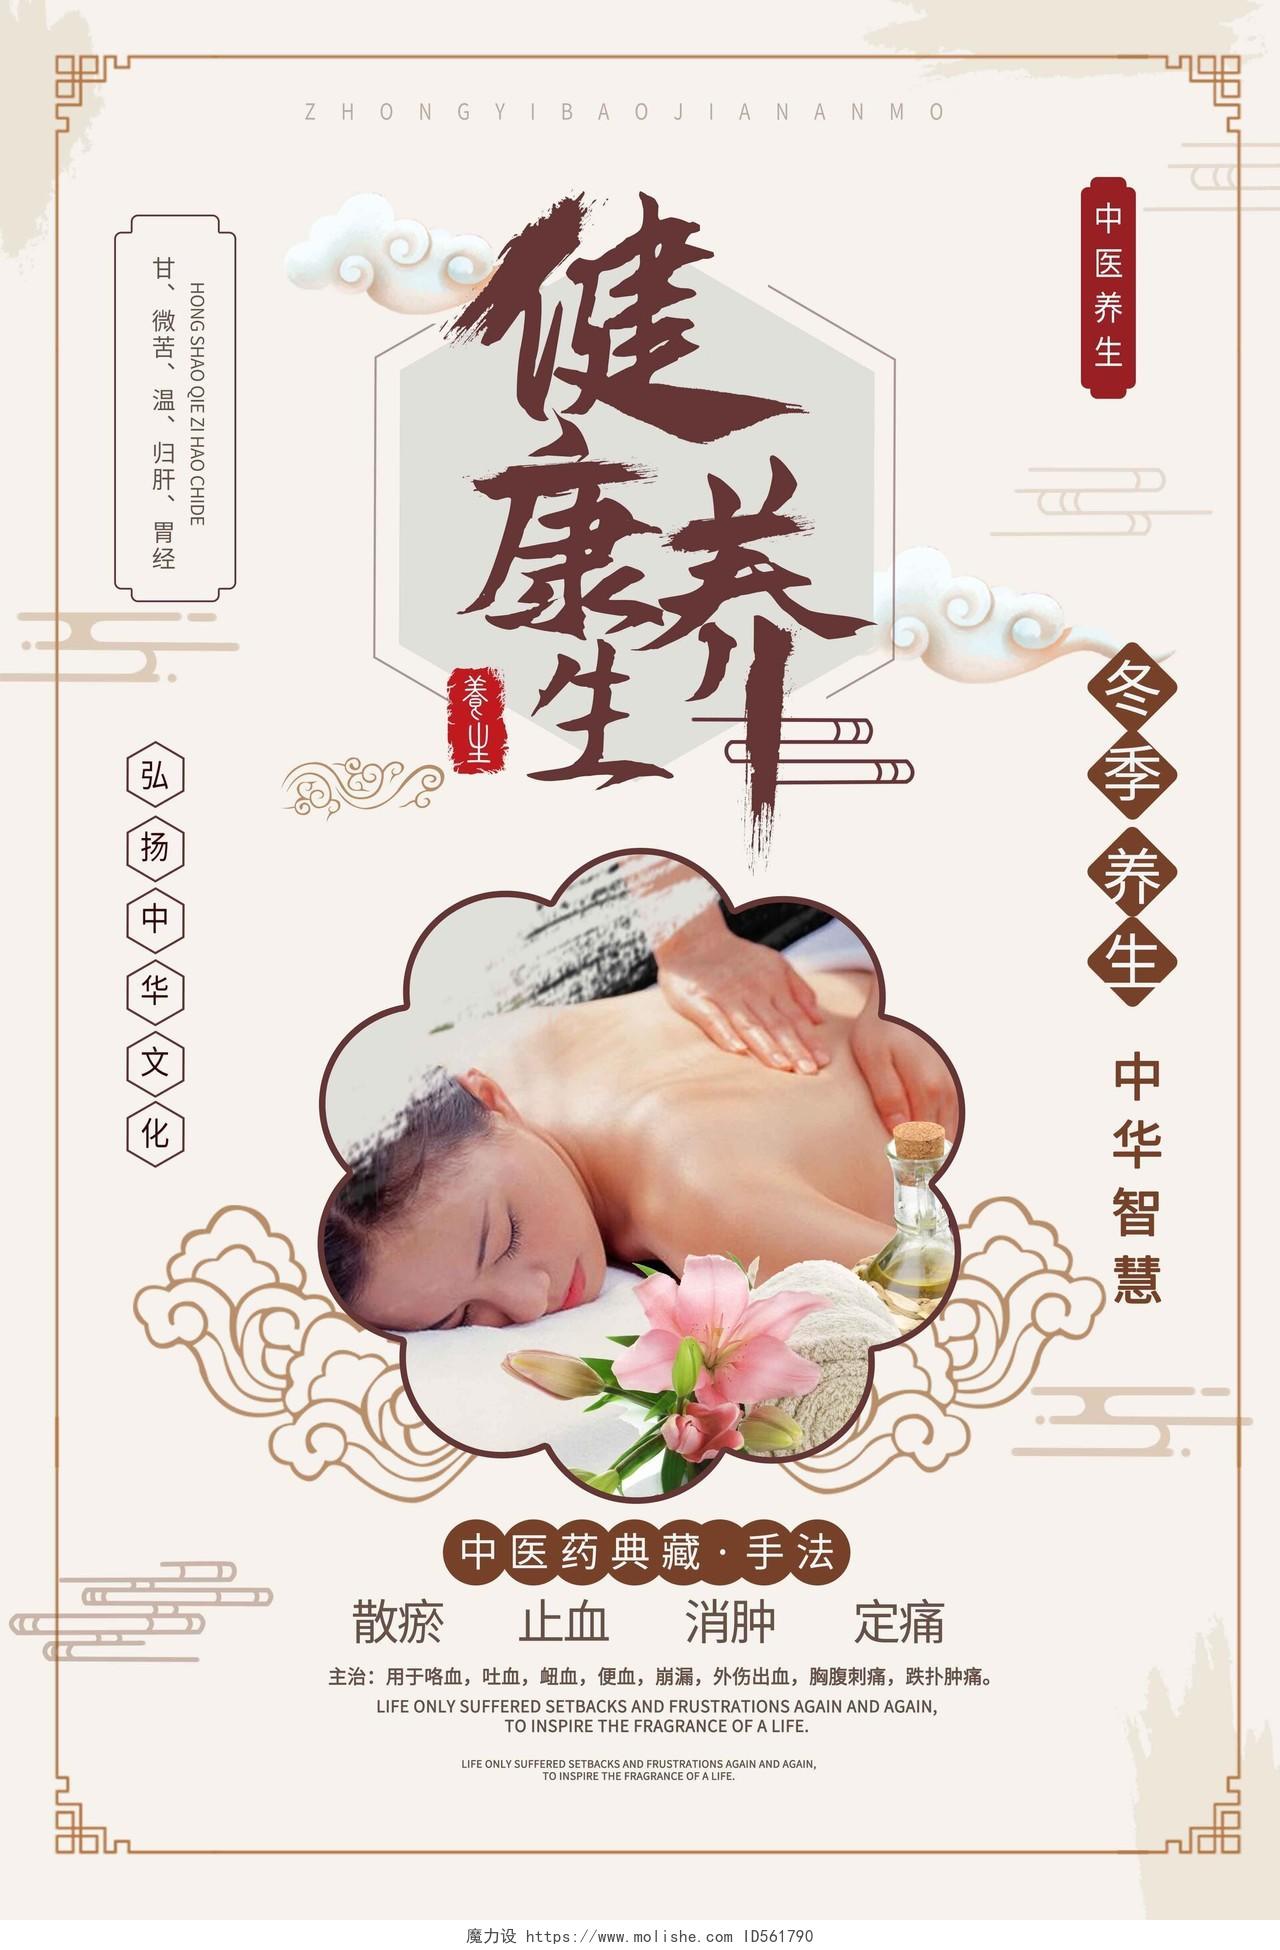 浅黄色背景中国风健康养生推拿spa宣传海报模板